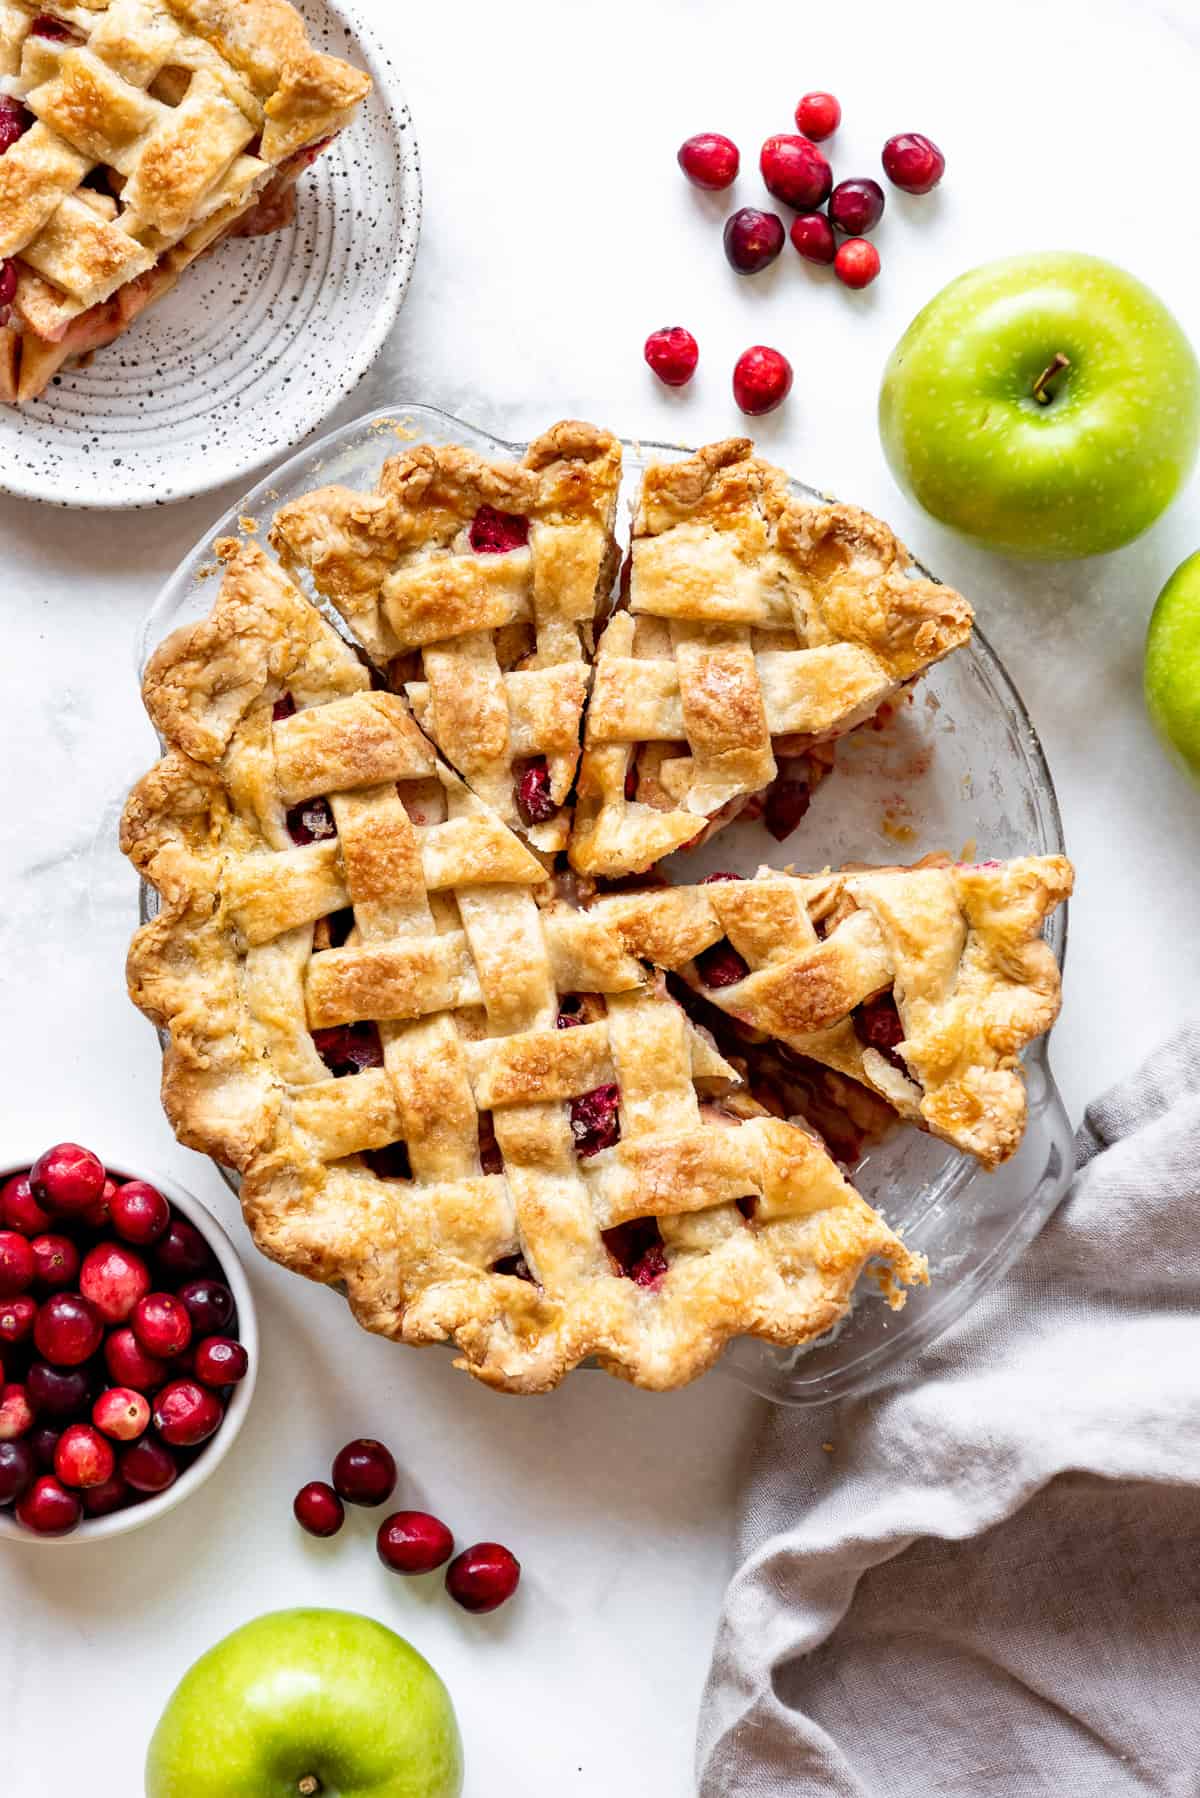 A lattice pie crust on top of a cranberry apple pie filling.